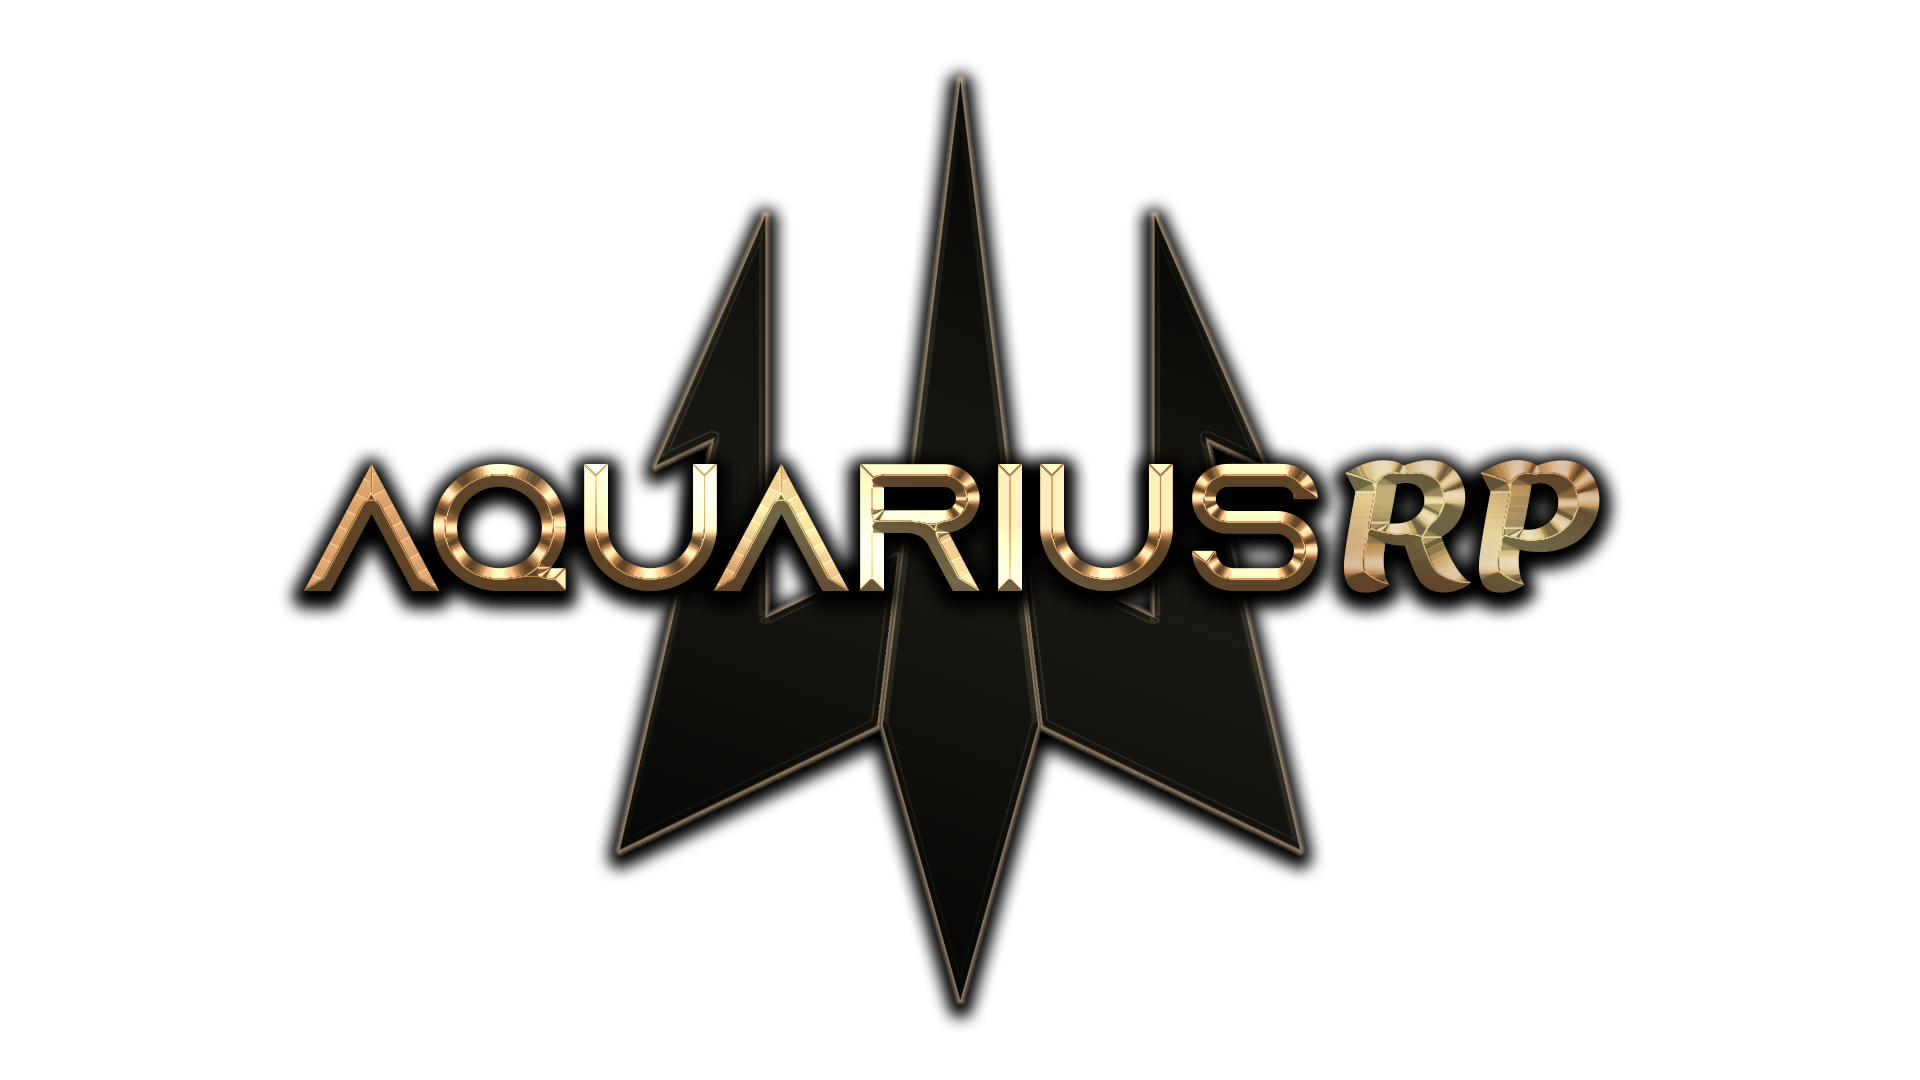 Aquarius RP